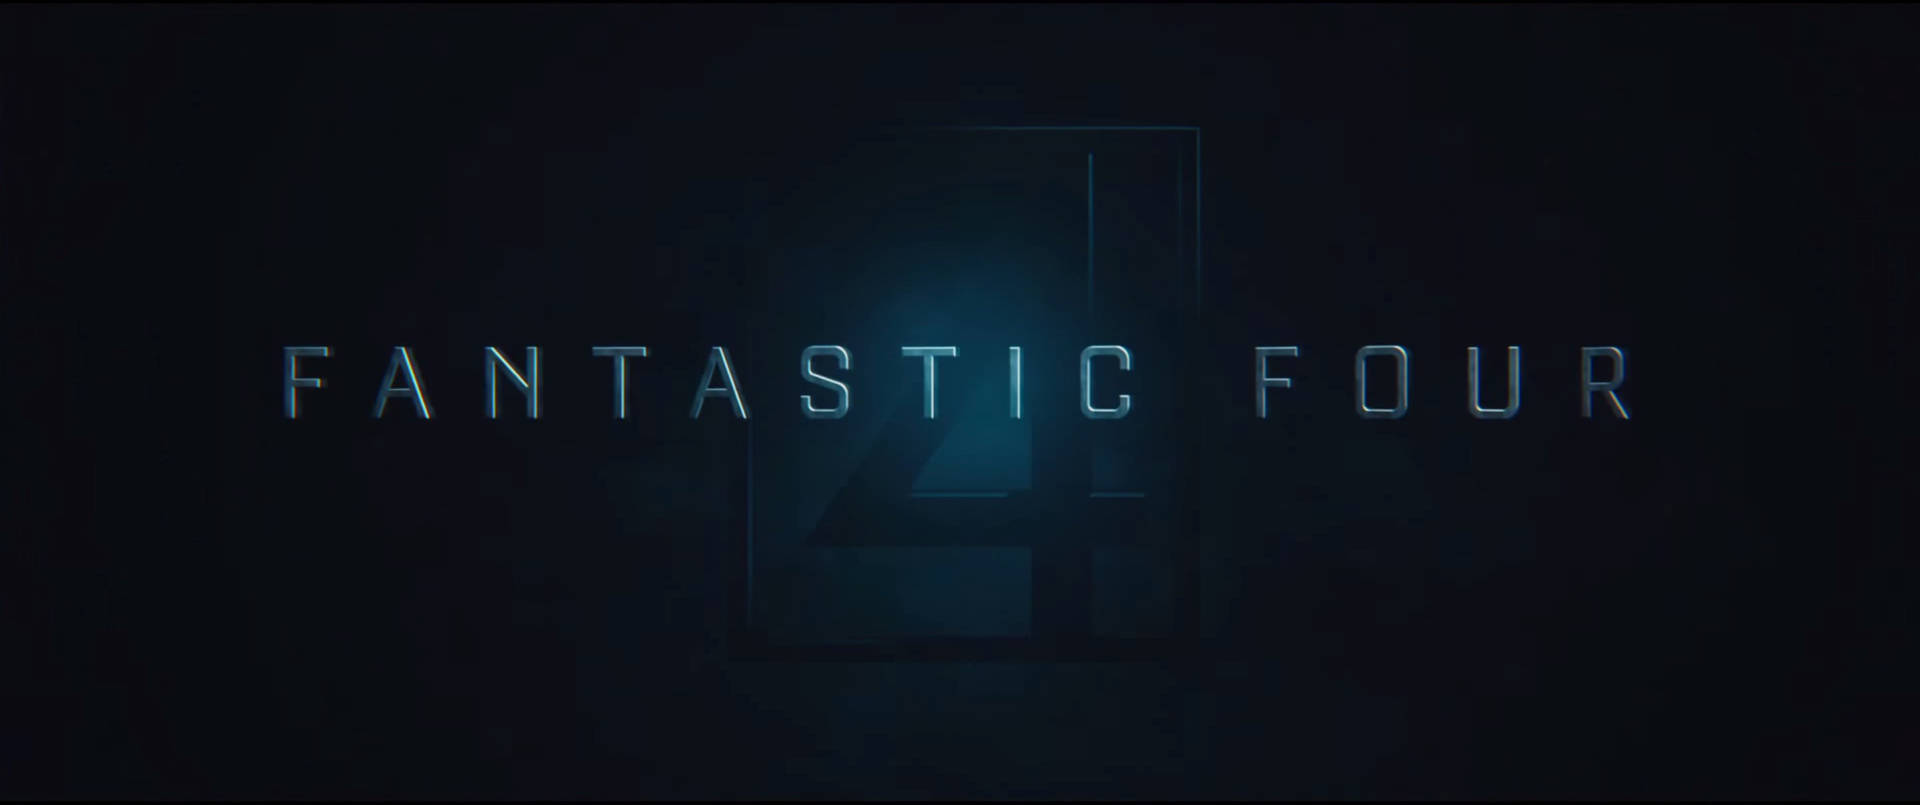 Logode La Película Los Cuatro Fantásticos 2015. Fondo de pantalla